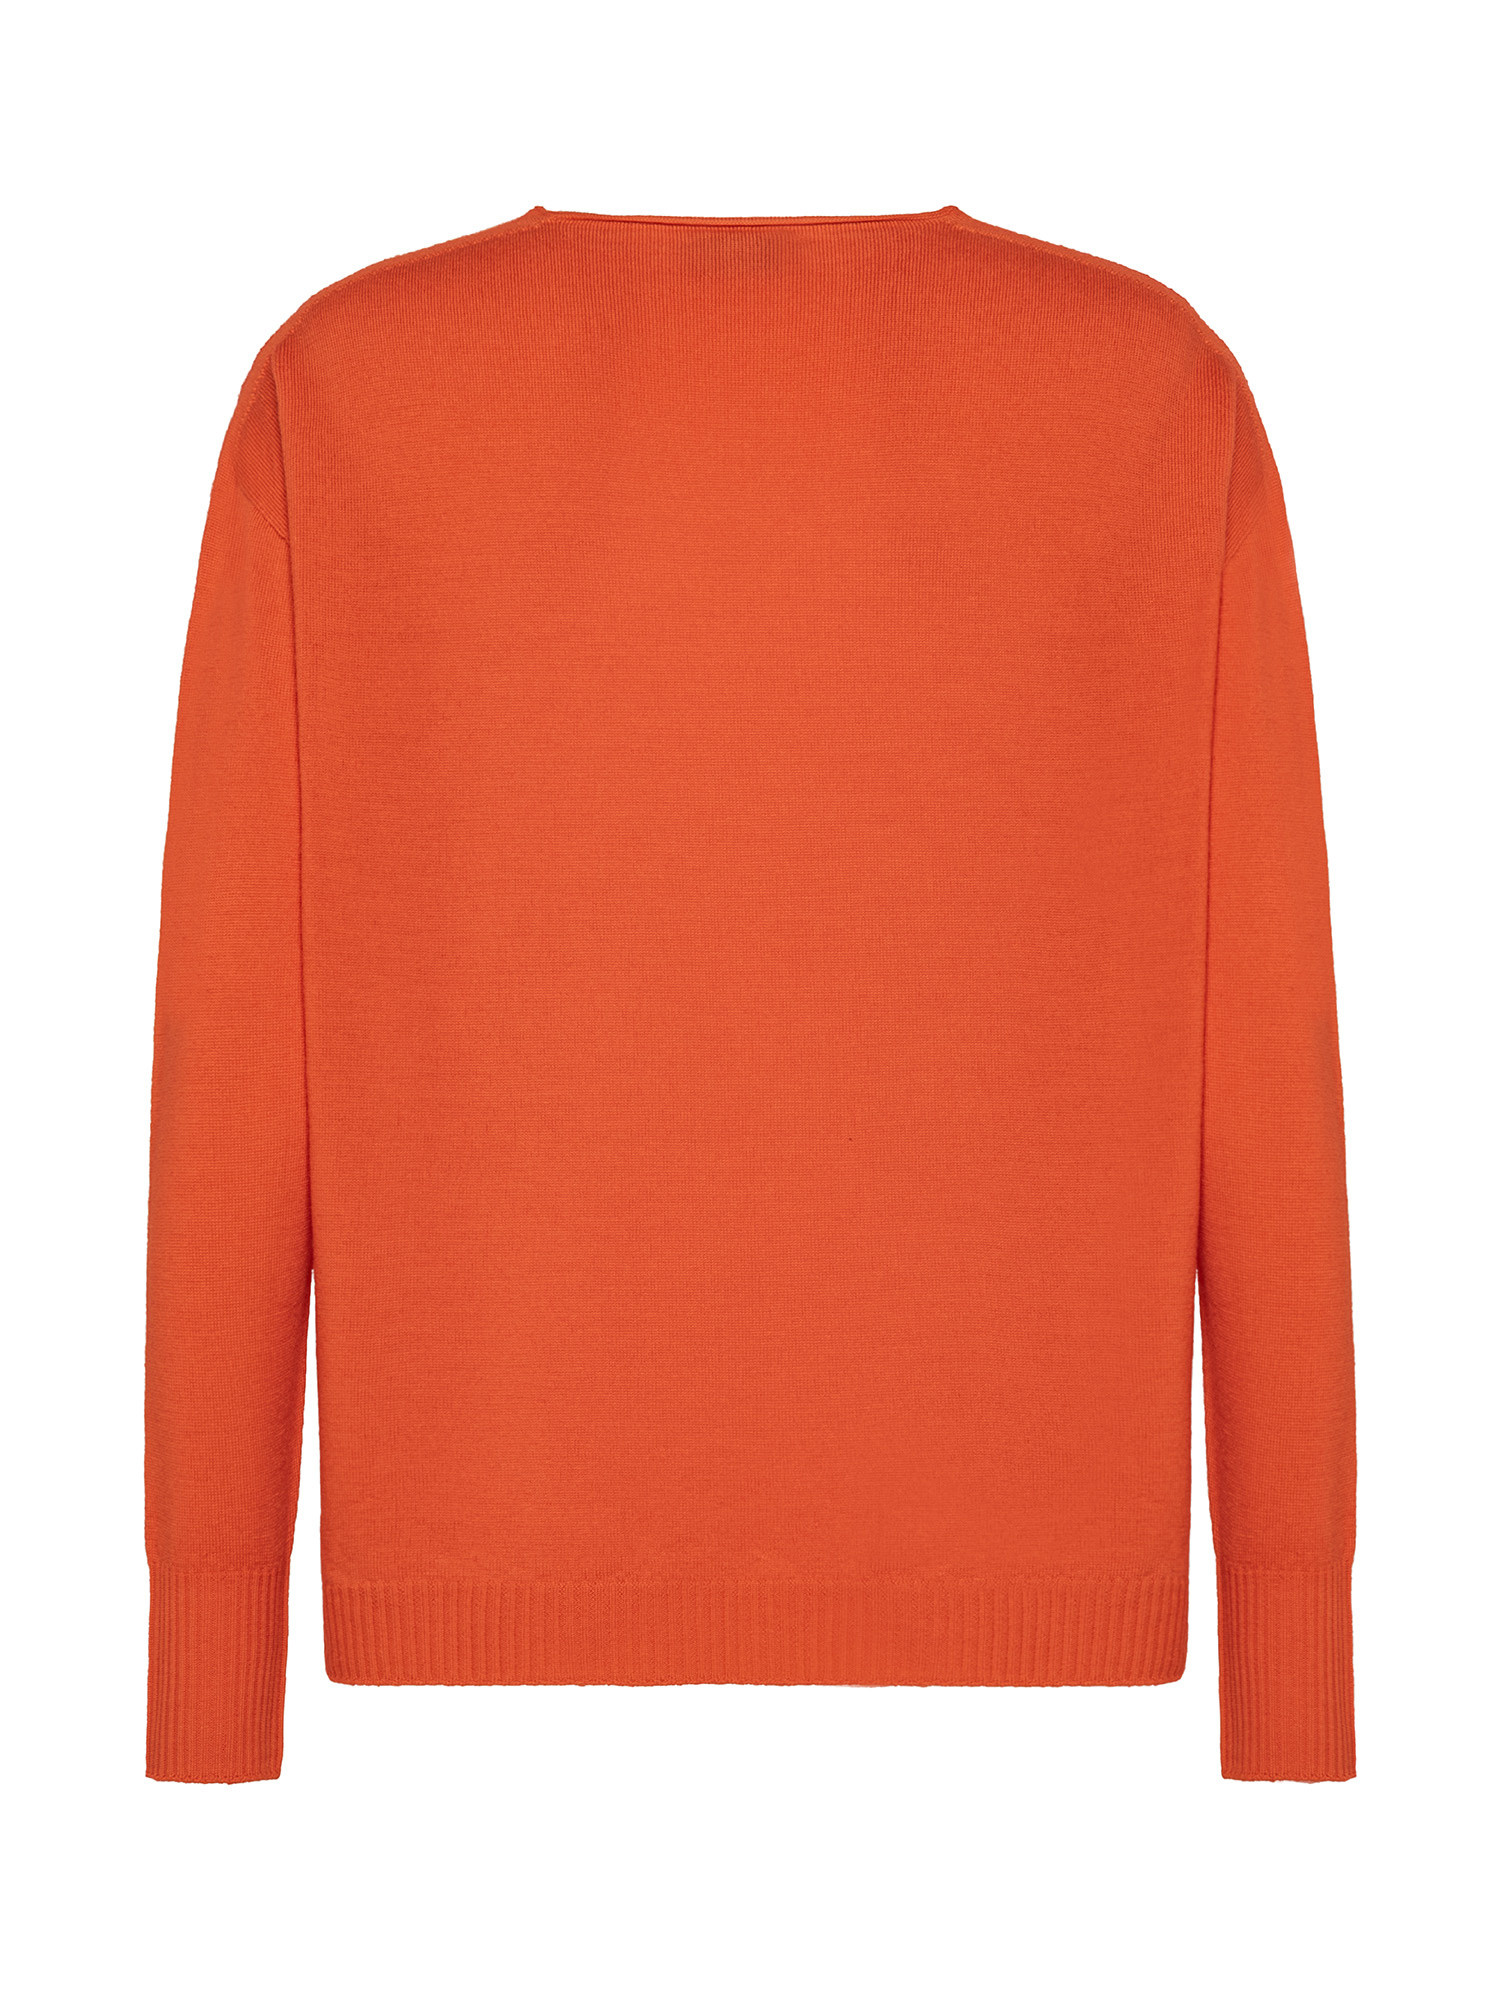 K Collection - V-neck sweater, Orange, large image number 1